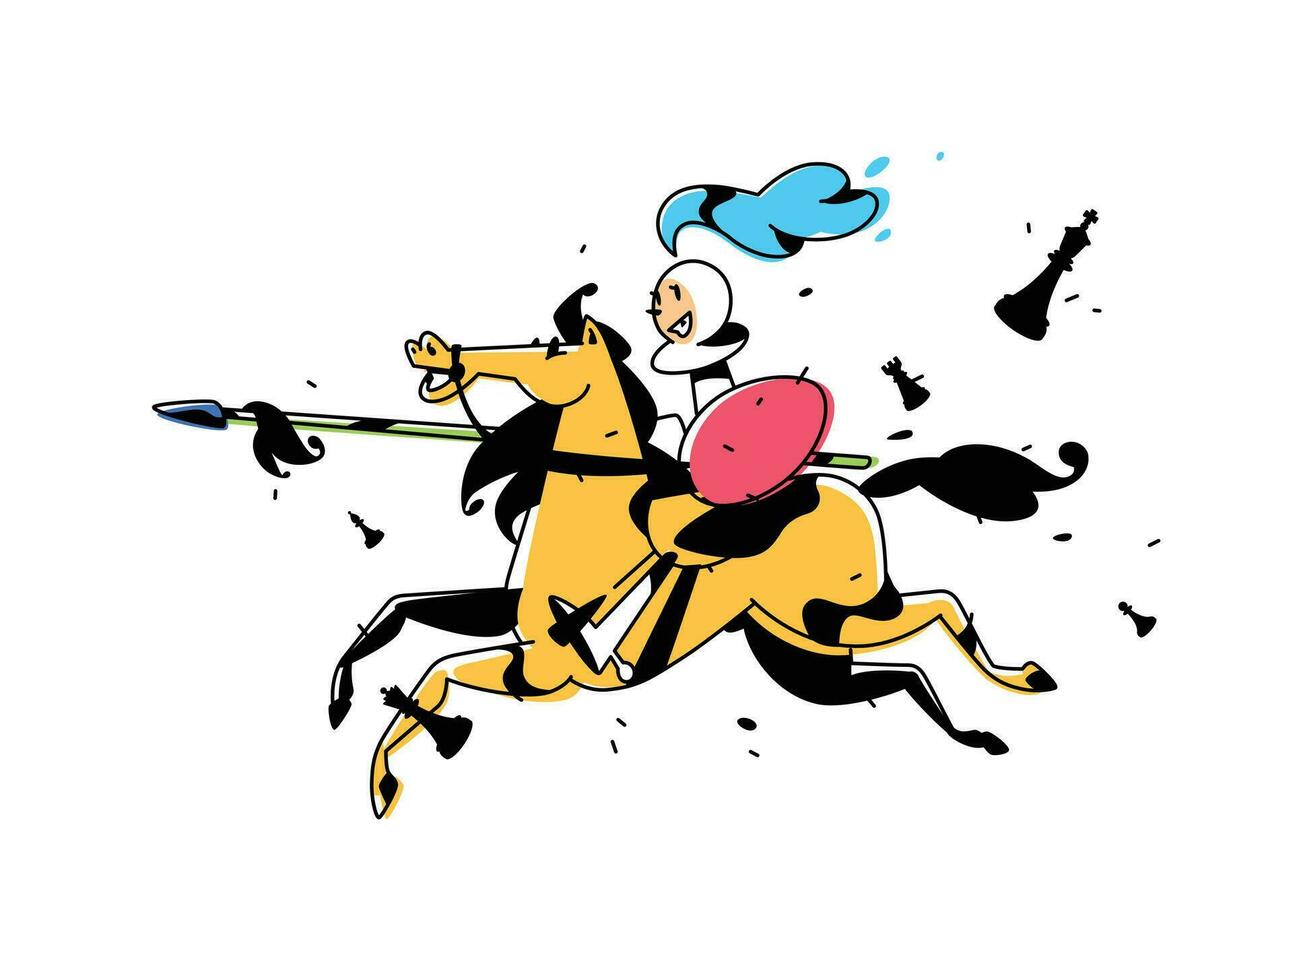 schack karaktär, pantsätta på hästryggen. vektor illustration. bild är isolerat på vit bakgrund. karaktär i de tecknad serie stil. pantsätta på häst med en spjut. en affisch för de schack skola.